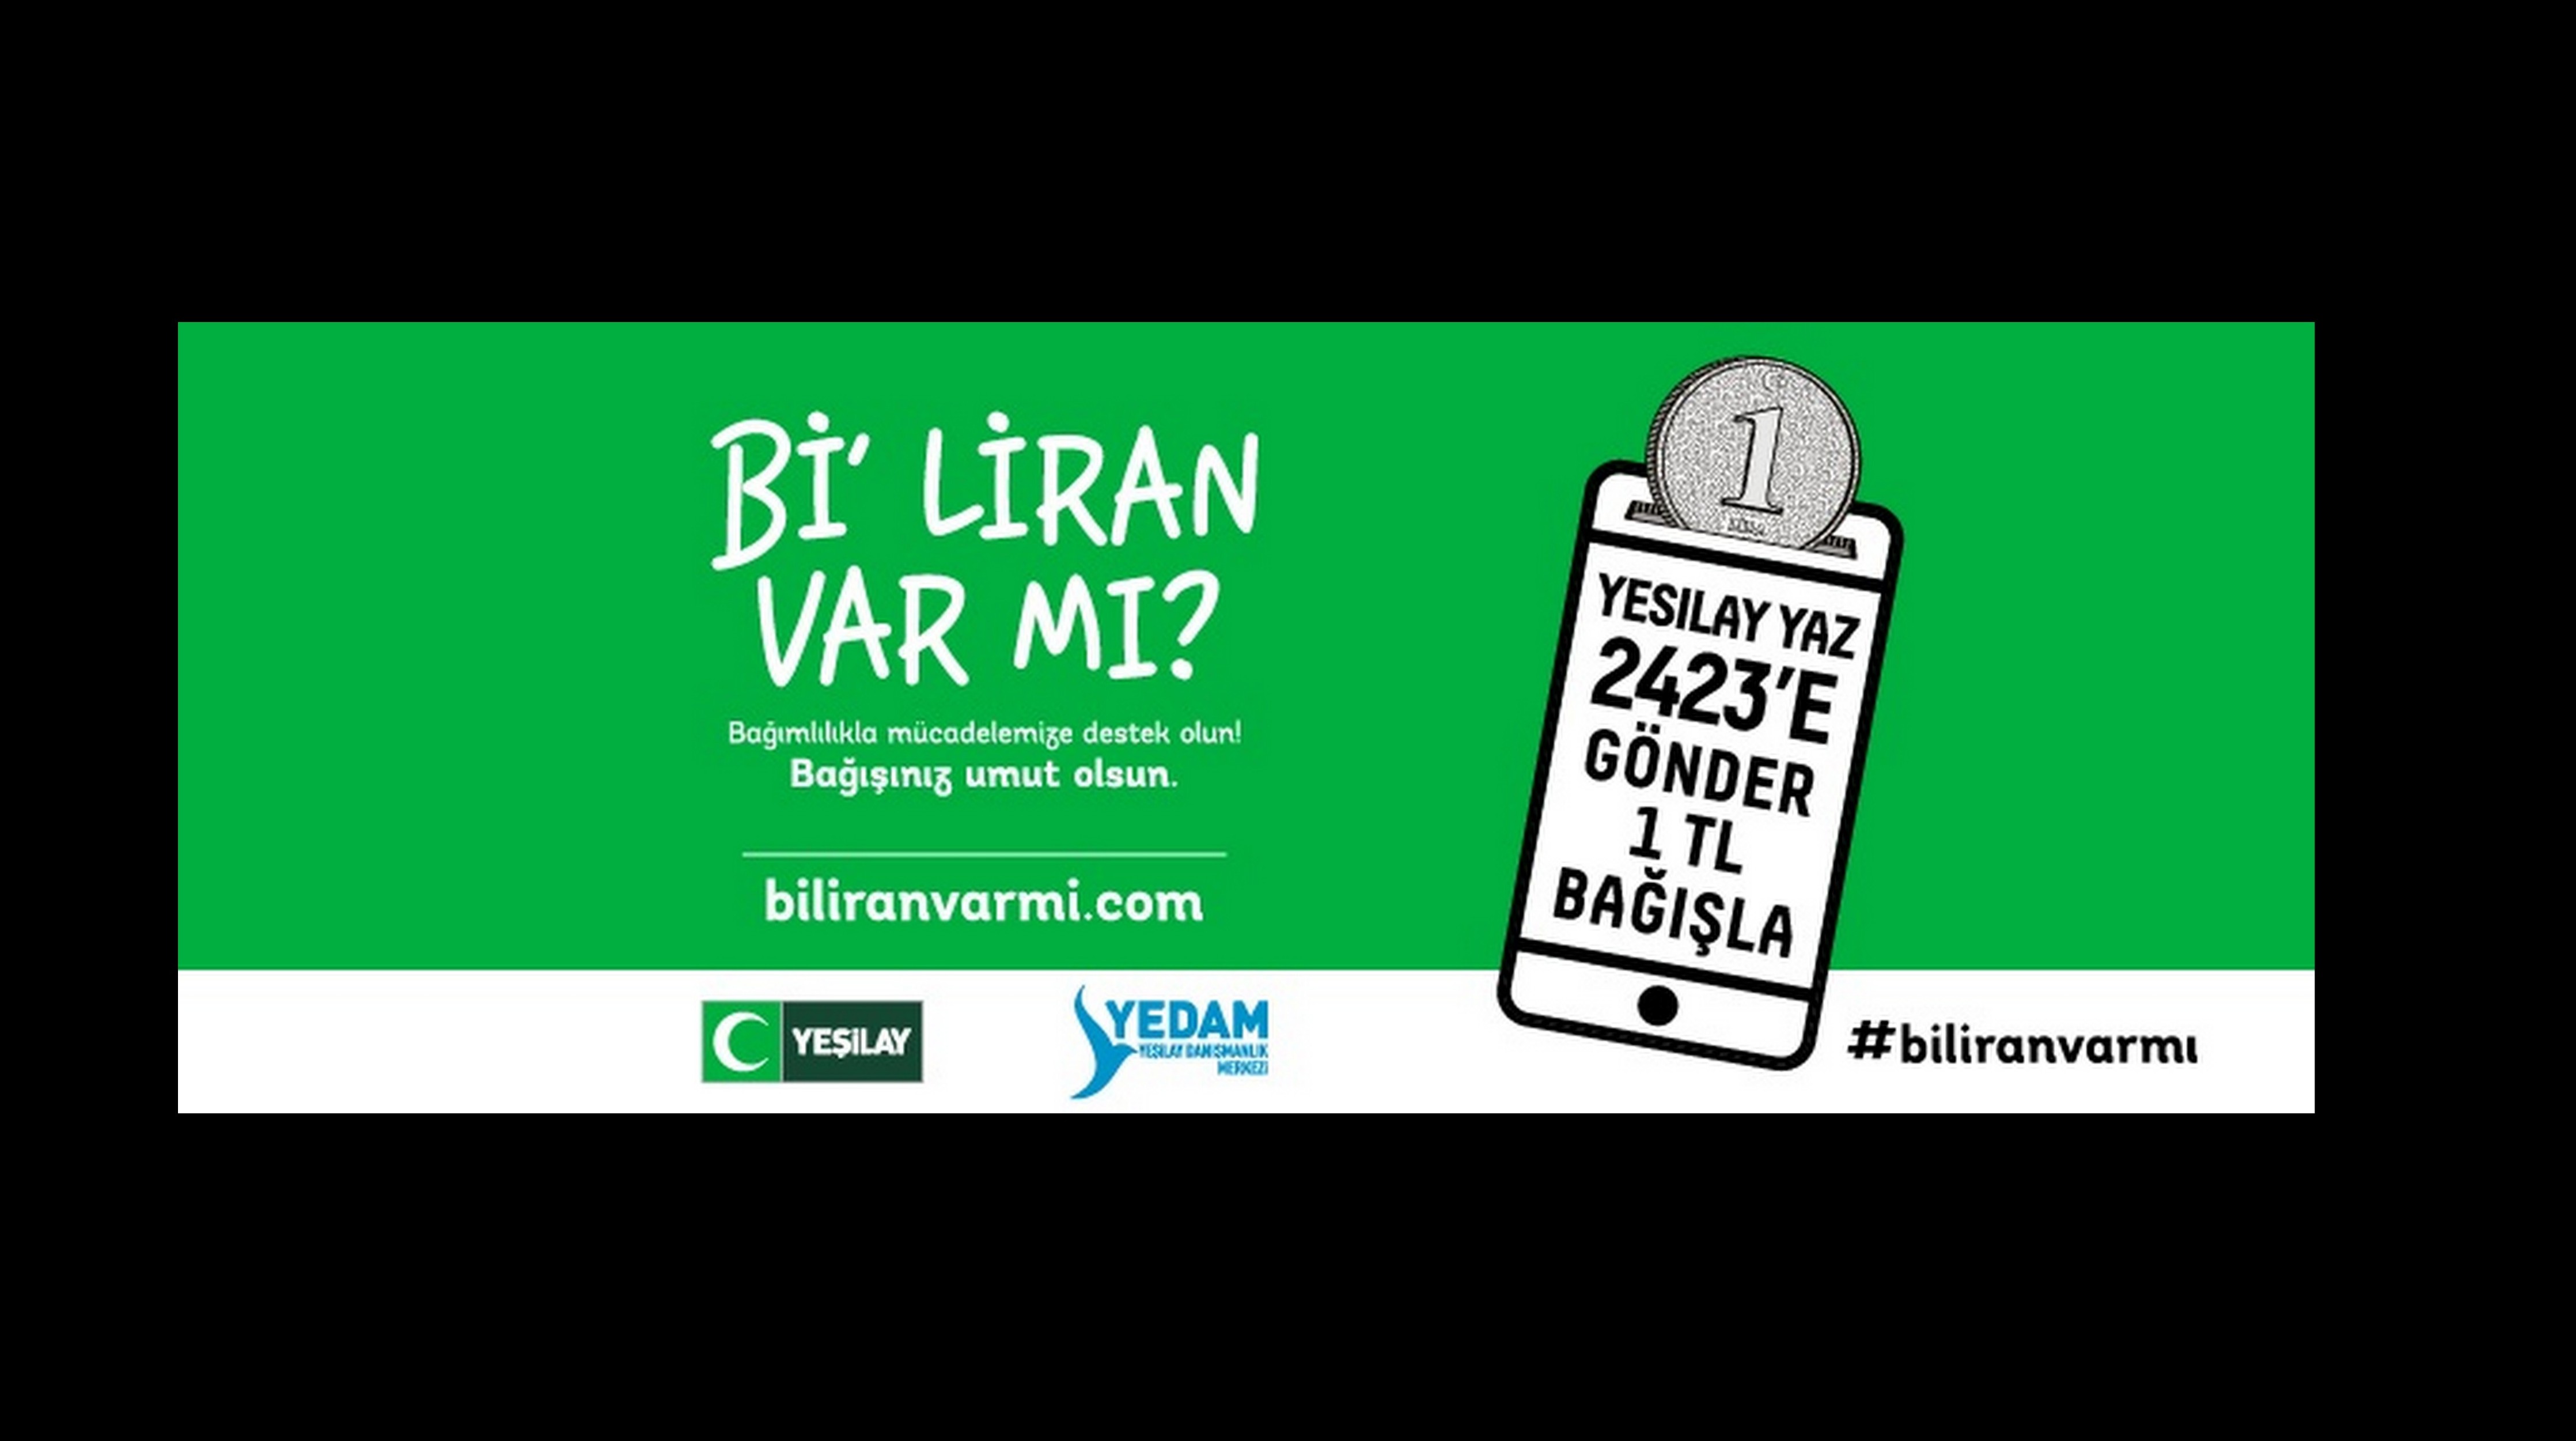 Sakarya Yeşilay Derneğinden Türkiye Genelinde organize edilen kampanya için çağrı